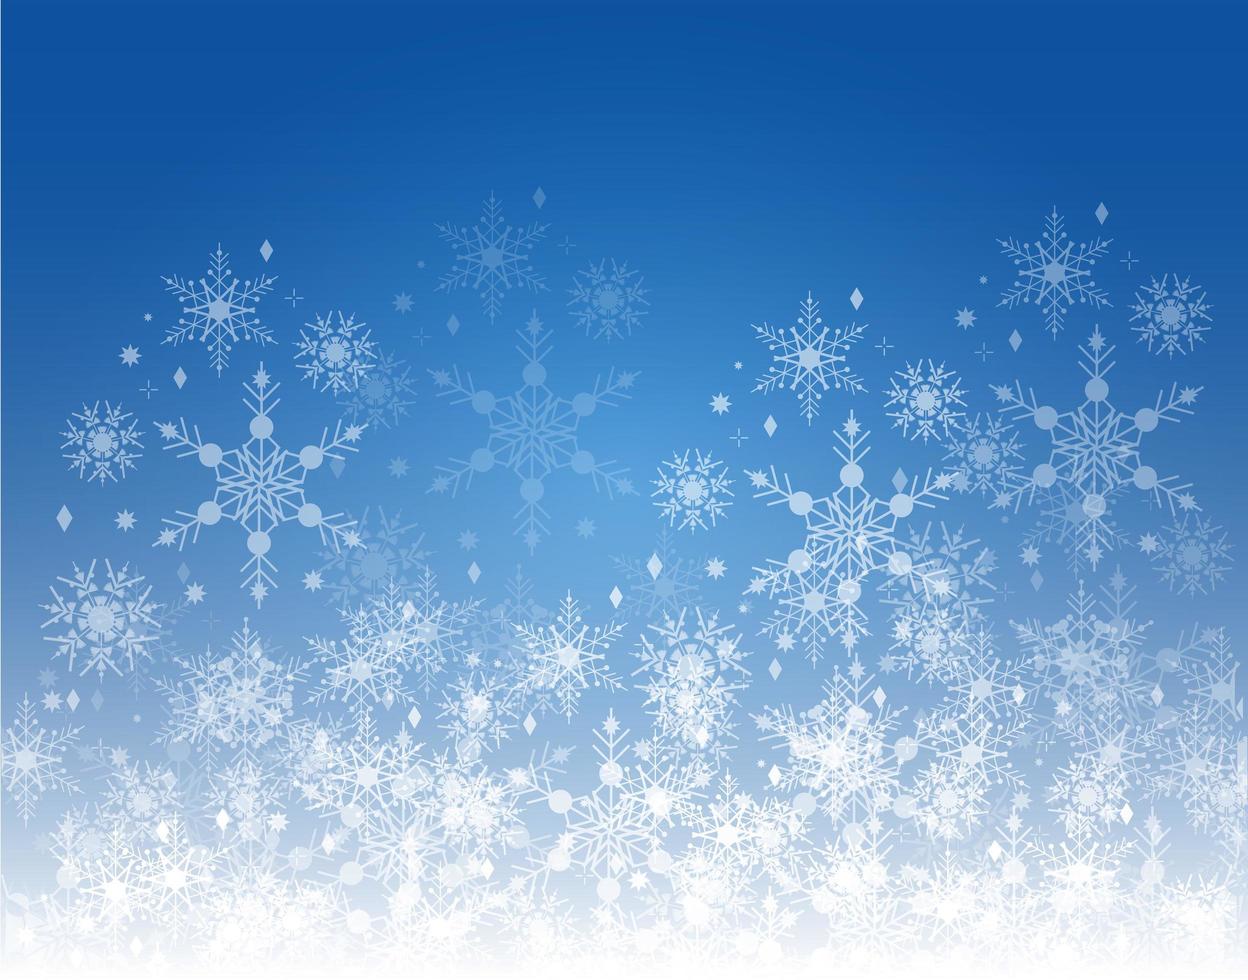 winter blauwe achtergrond met vallende sneeuwvlokken. sneeuw terug voor prettige kerstdagen en gelukkig nieuwjaar voor banner, kaart, ansichtkaart, evenement, uitnodiging en over ontwerp. elegante geometrische vectorillustratie vector